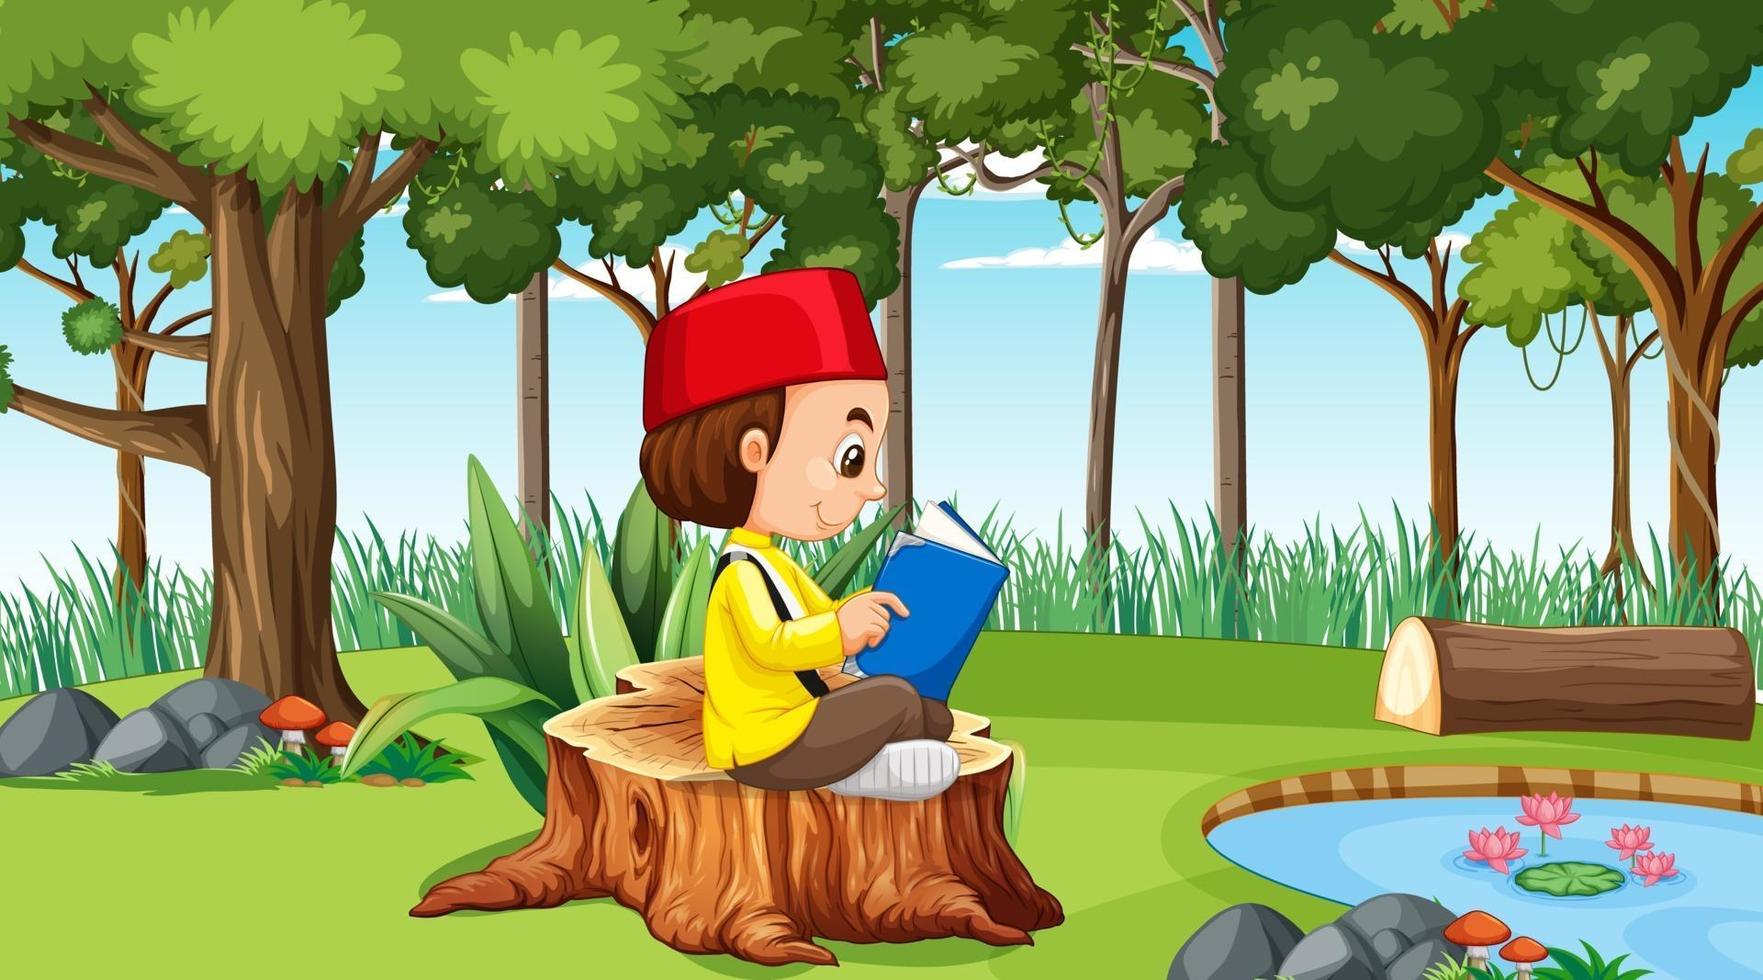 menino muçulmano usa roupas tradicionais e lê um livro na floresta vetor